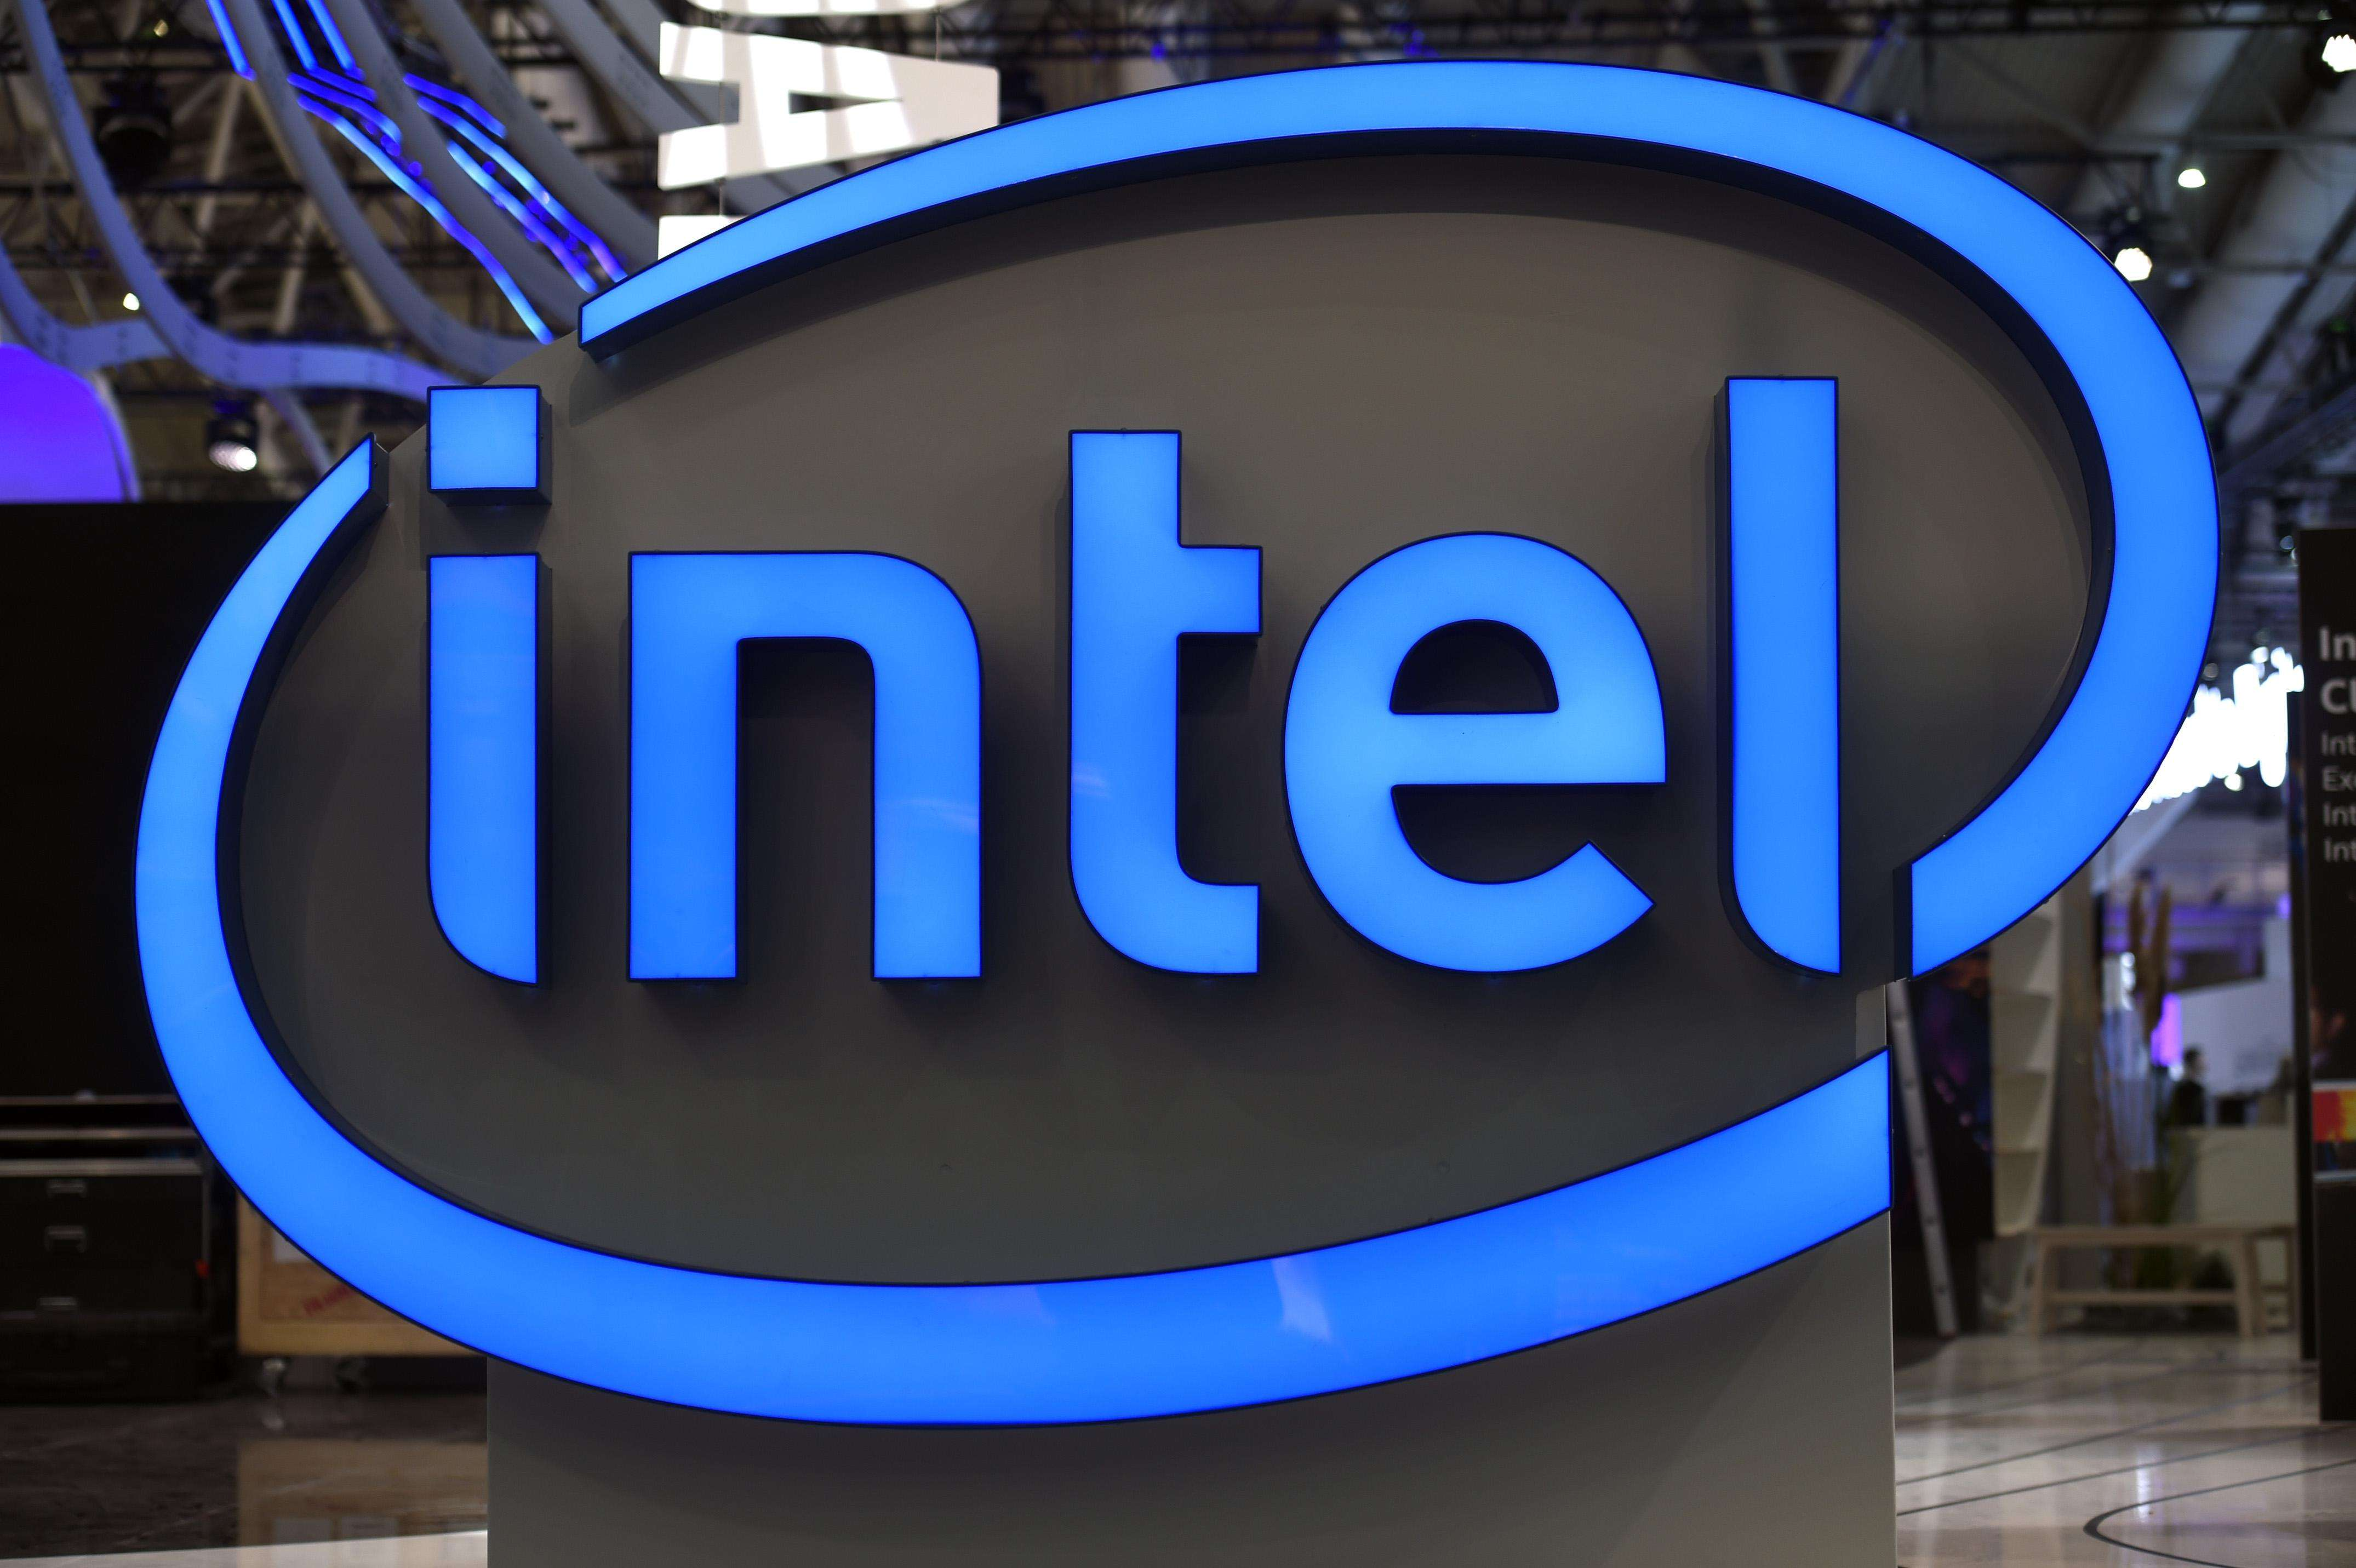 Akeh raksasa global gabung!Intel partner karo macem-macem perusahaan kanggo nyebarake solusi jaringan pribadi 5G